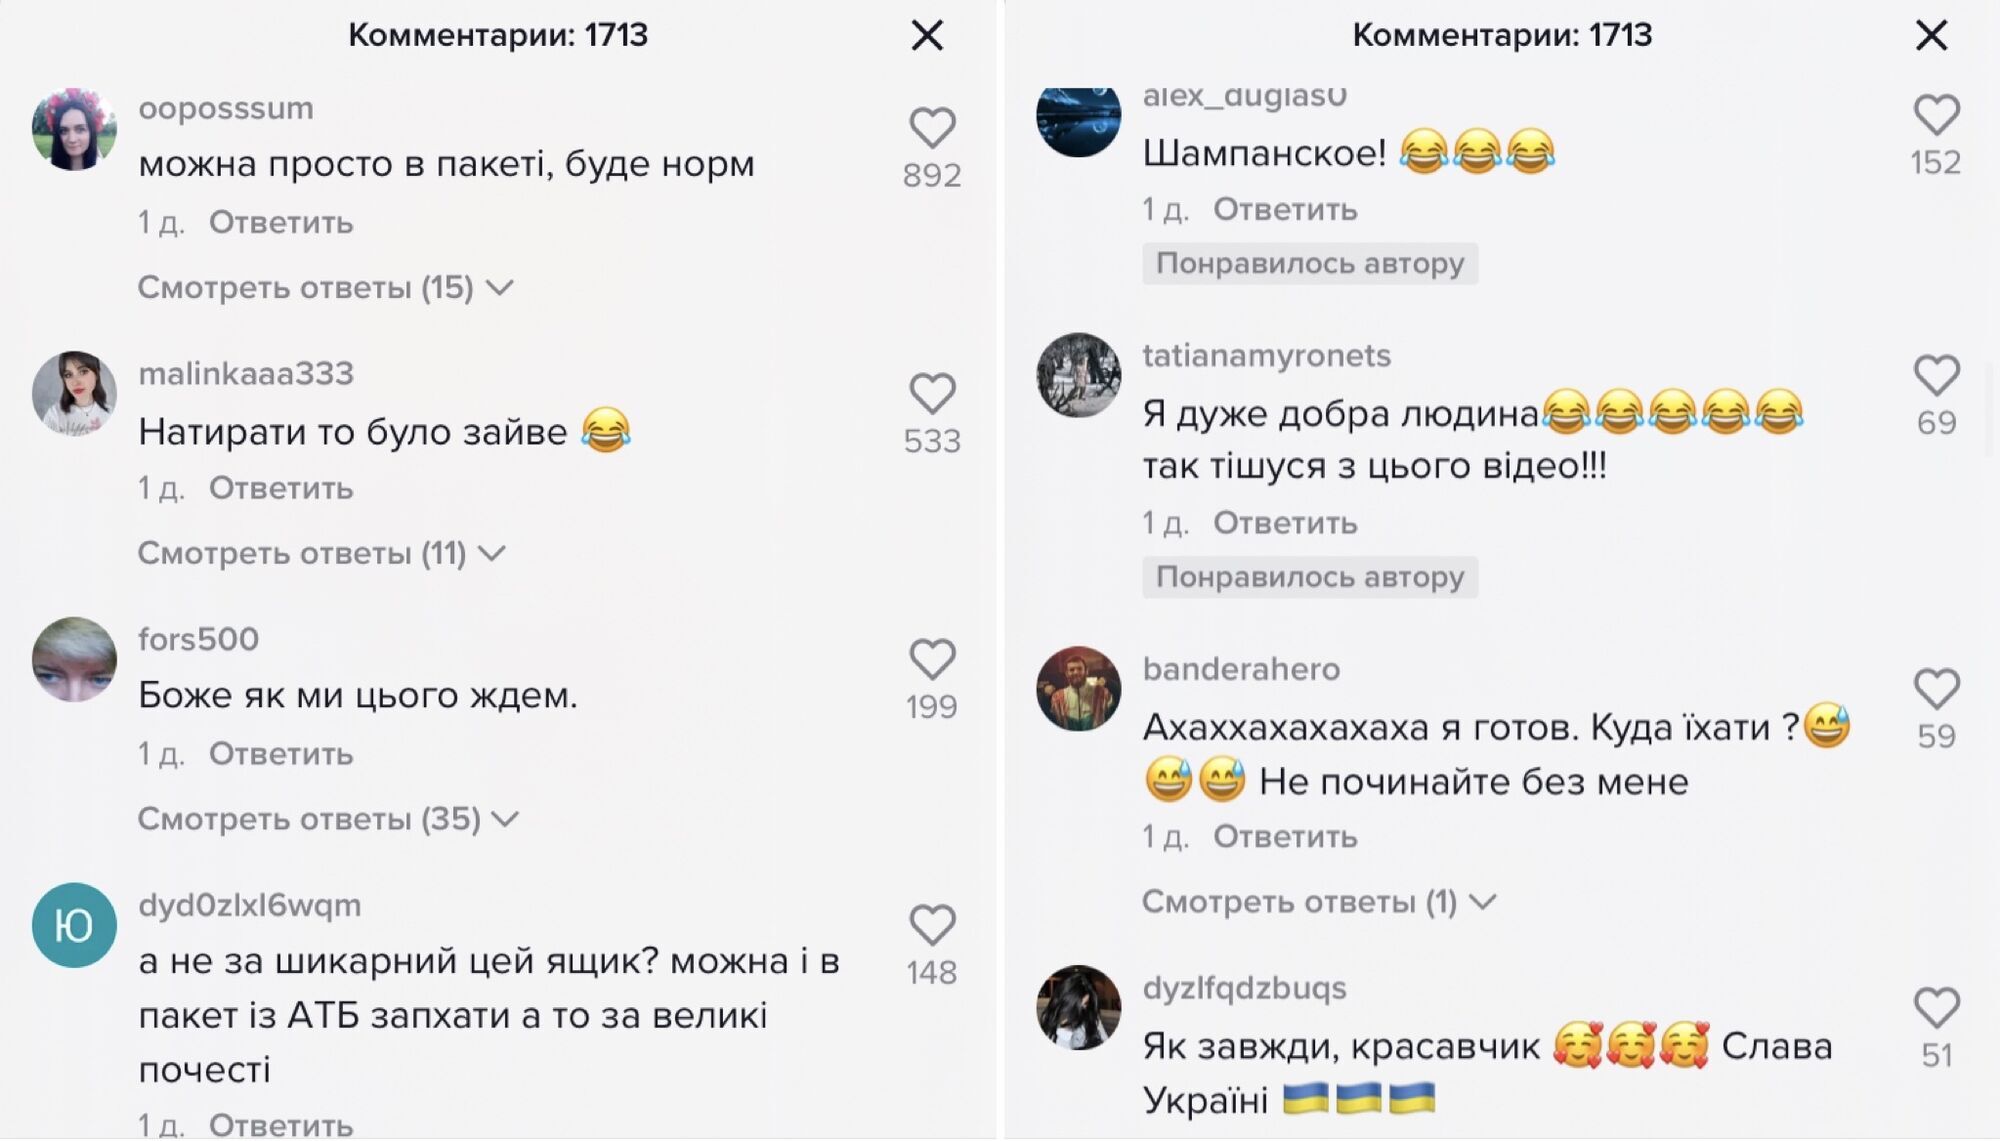 Коментарі під відео Олександра Кучкова